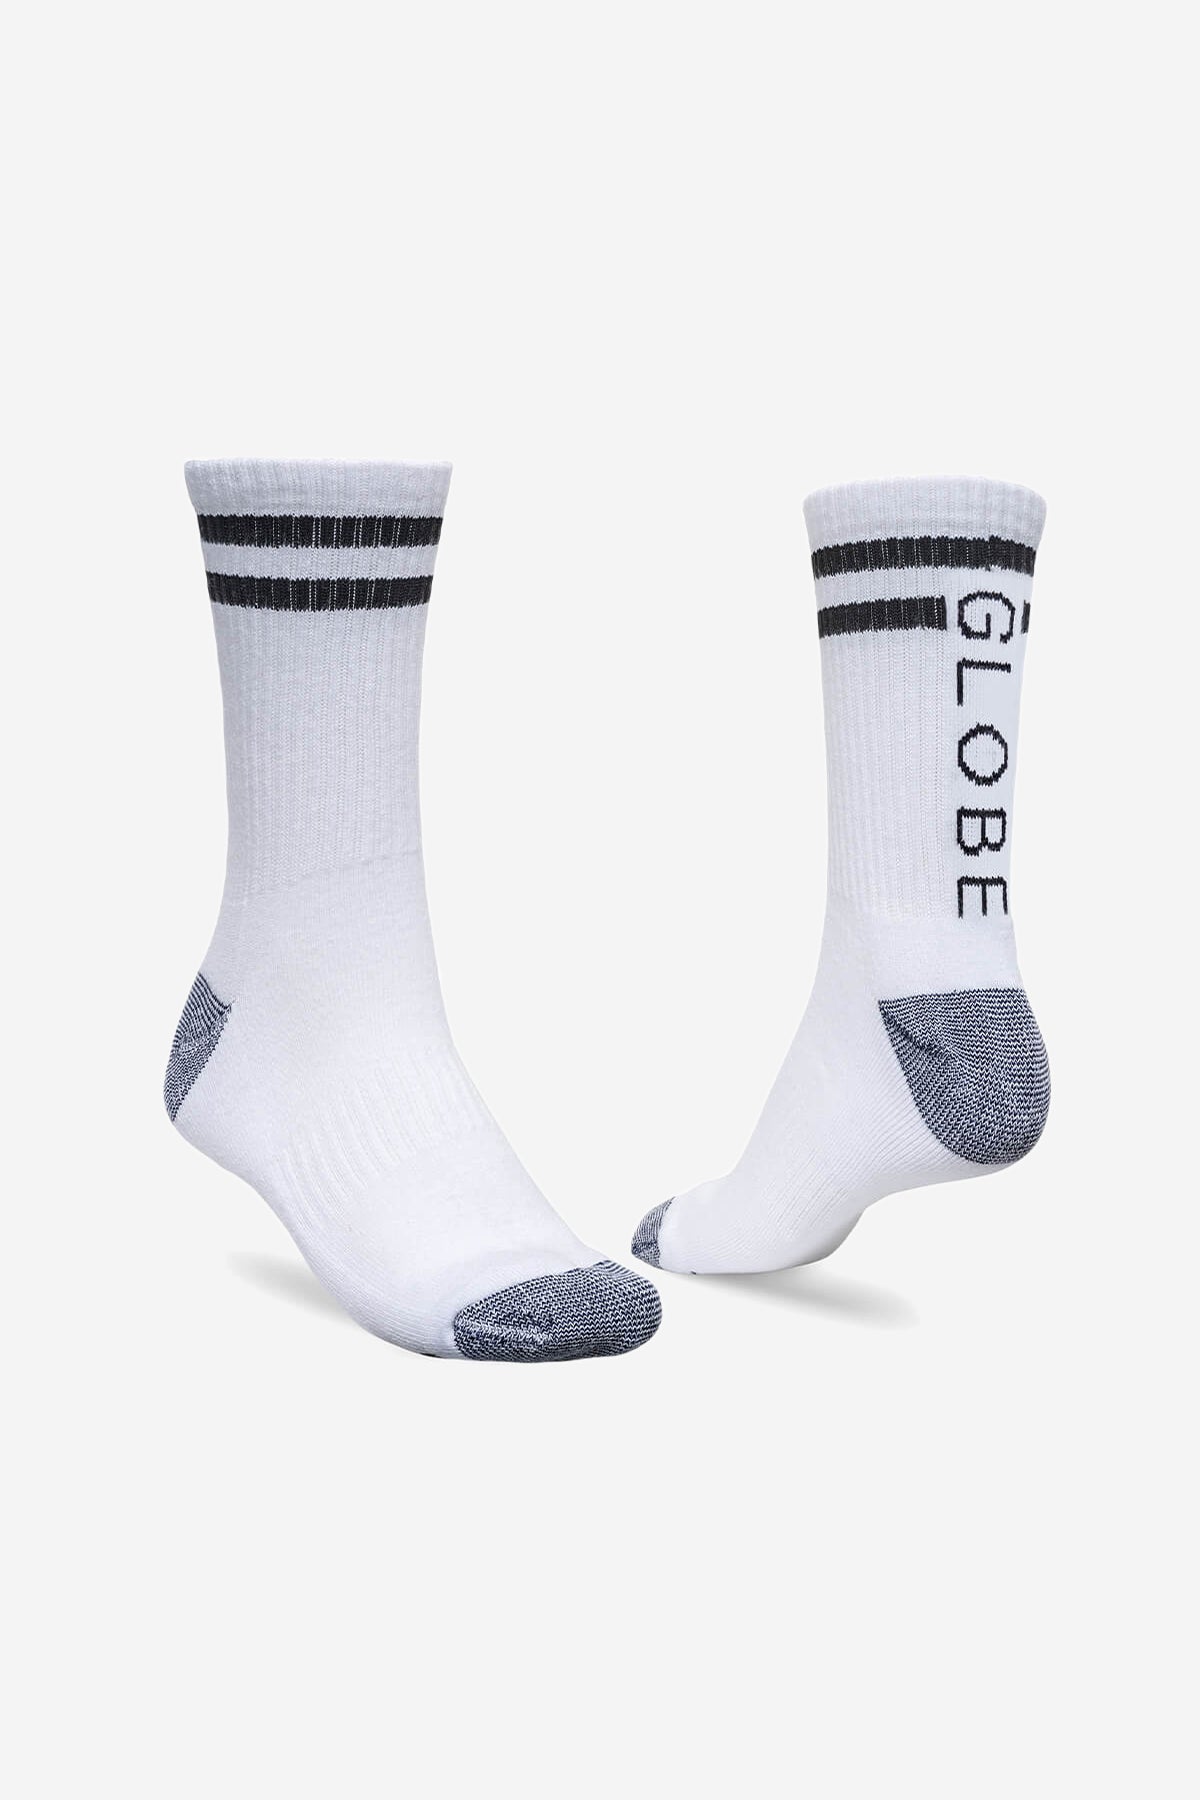 Globe - Carter Crew Socke 5er Pack - White